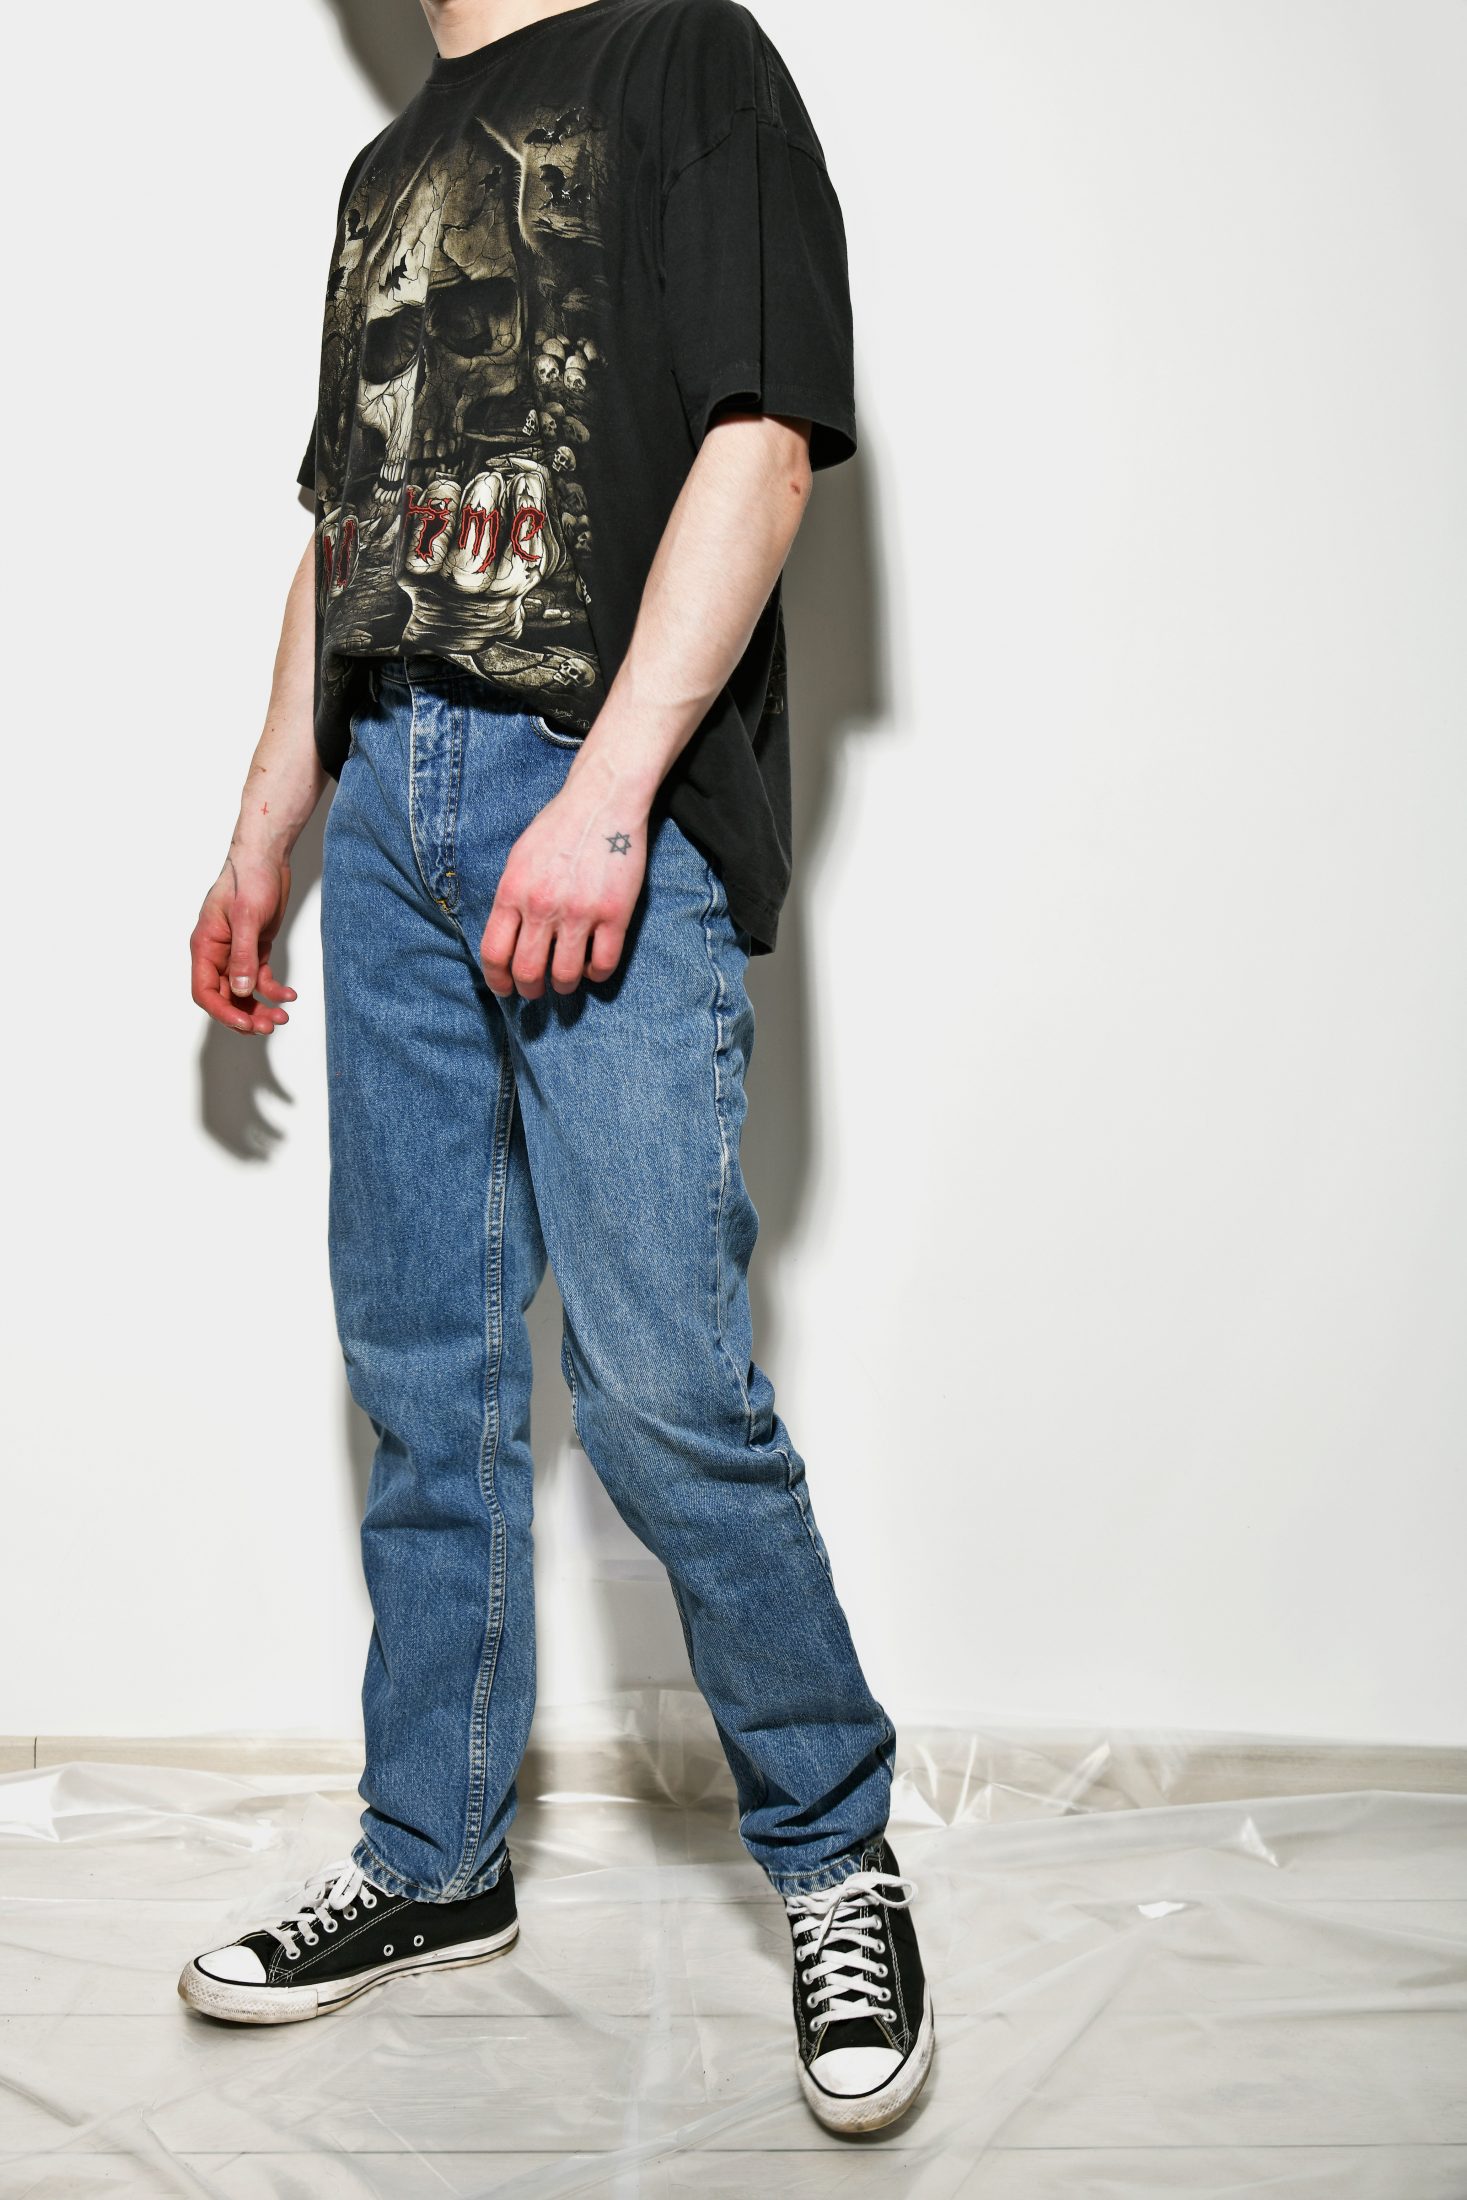 LEE vintage jeans | Vintage clothes online for men